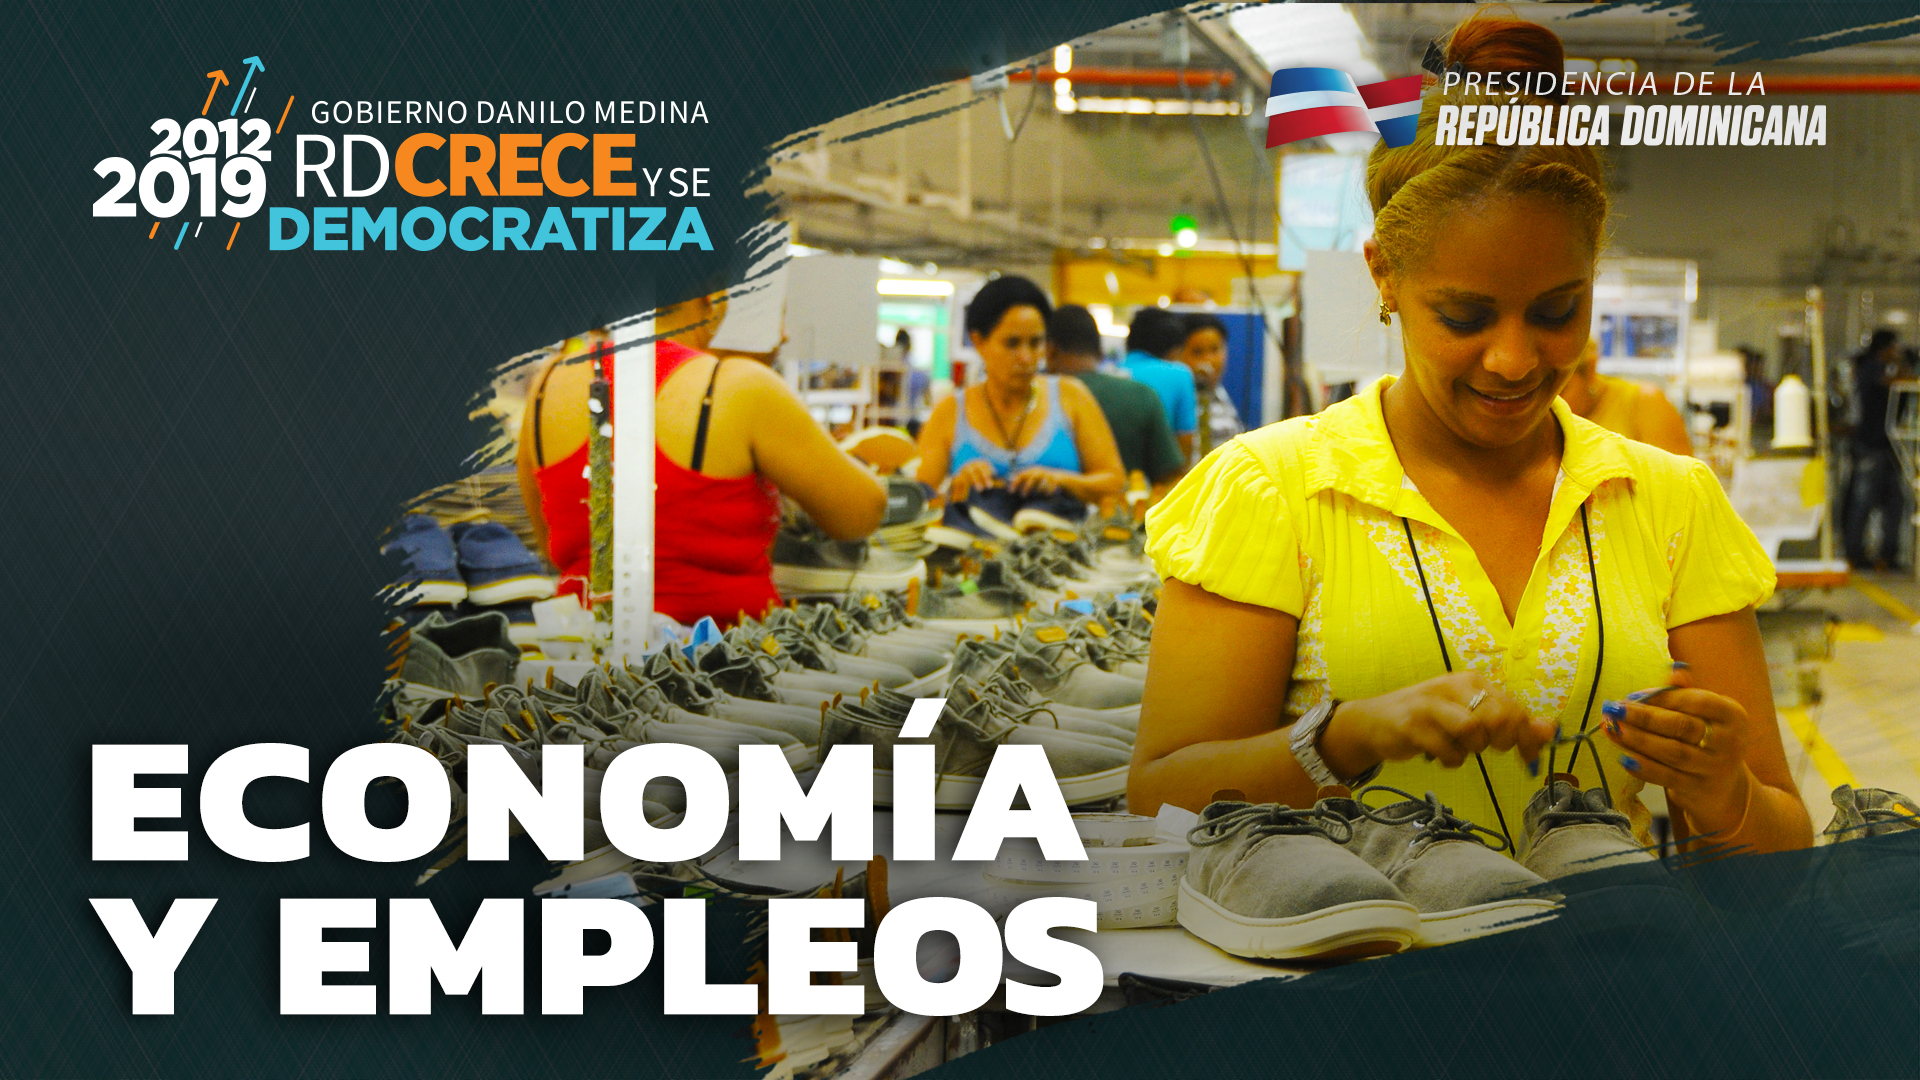 REPÚBLICA DOMINICANA: Economía dominicana, la que más y mejor crece en la región. Más de un millón 500 mil personas salieron de la pobreza durante últimos 7 años